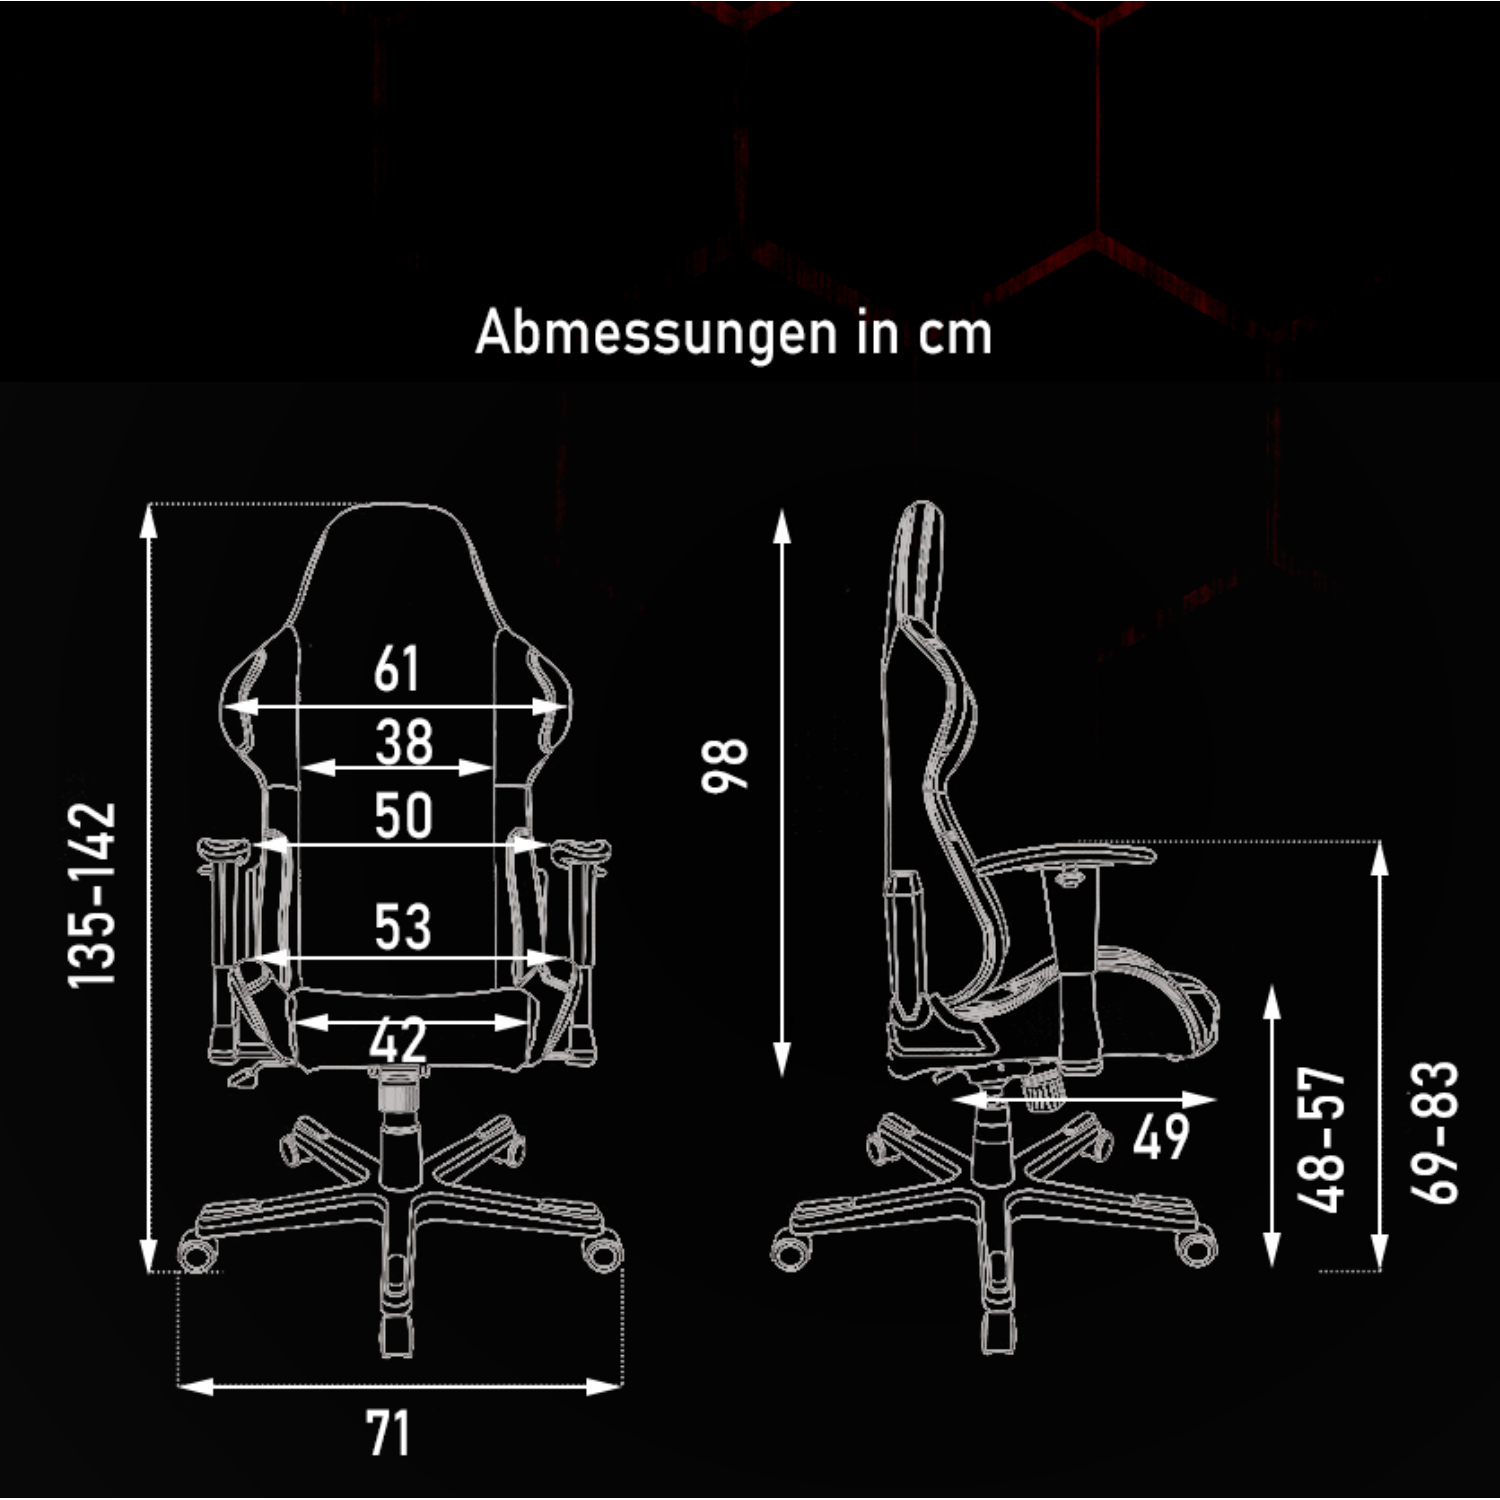 Chair, Schwarz Gaming DXRACER K-Series